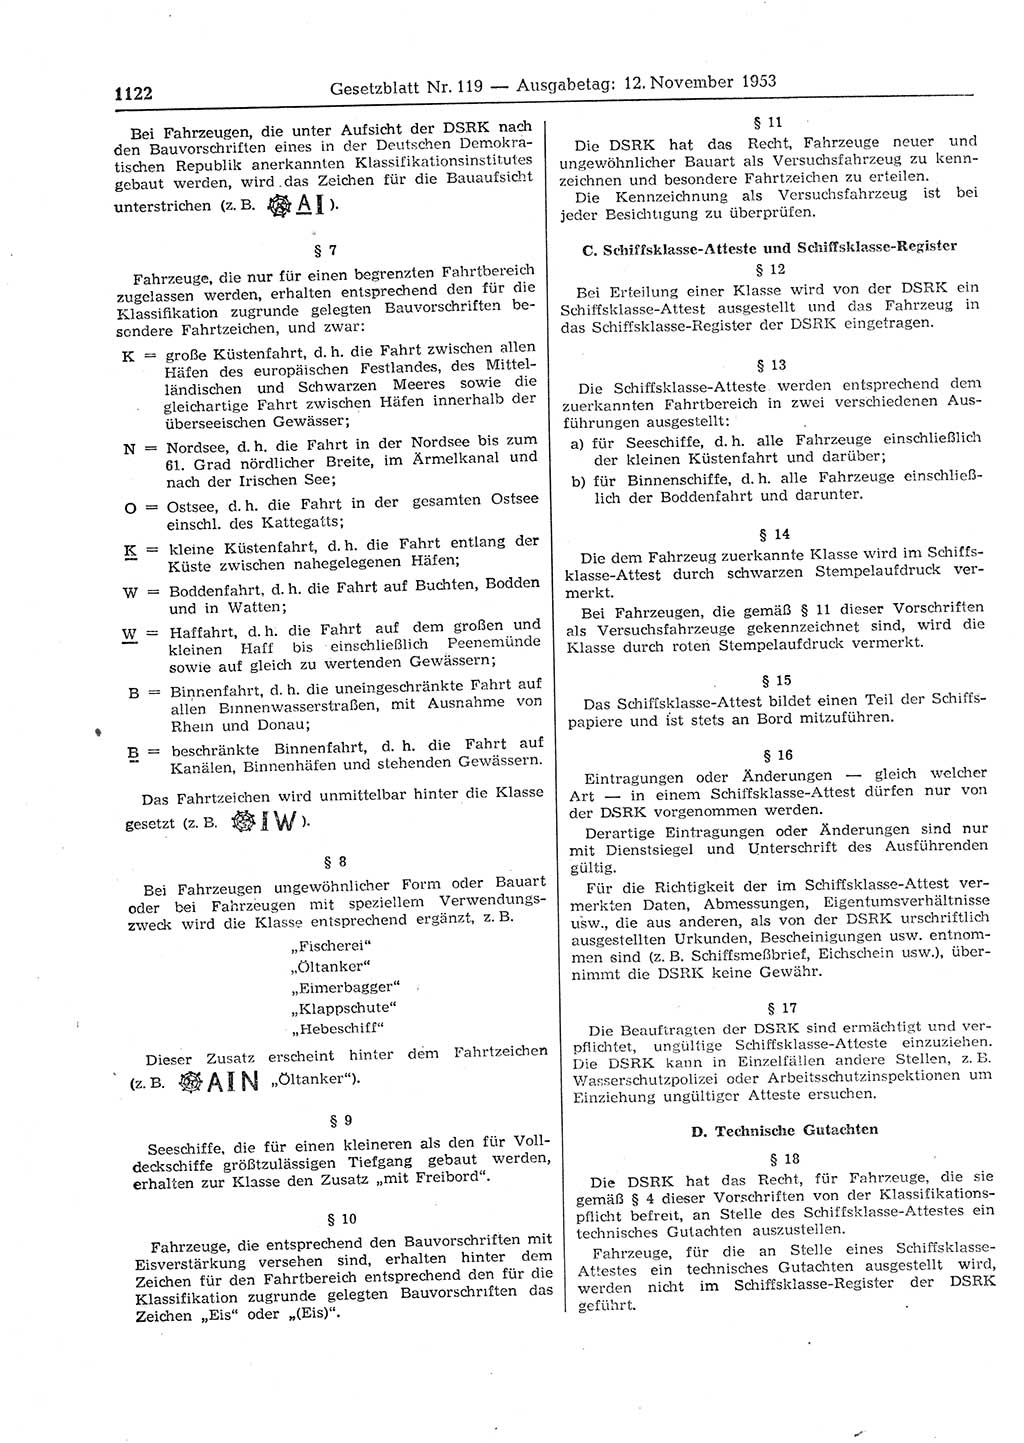 Gesetzblatt (GBl.) der Deutschen Demokratischen Republik (DDR) 1953, Seite 1122 (GBl. DDR 1953, S. 1122)